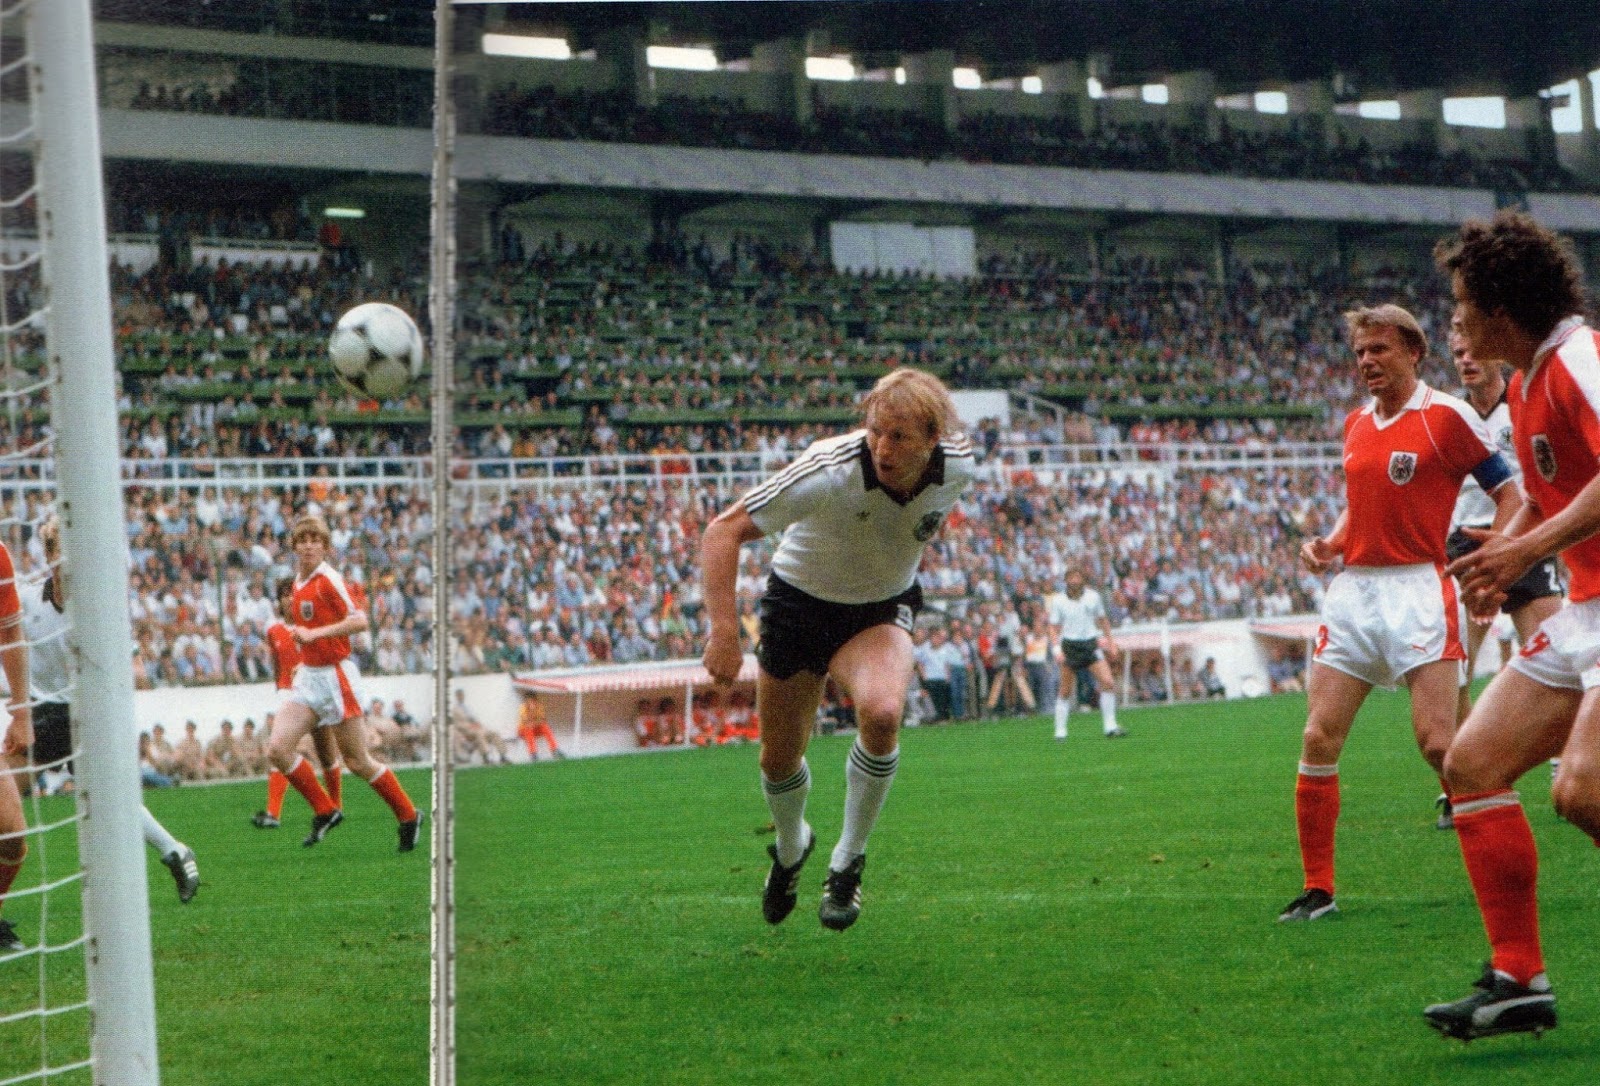 Deutschland 1982